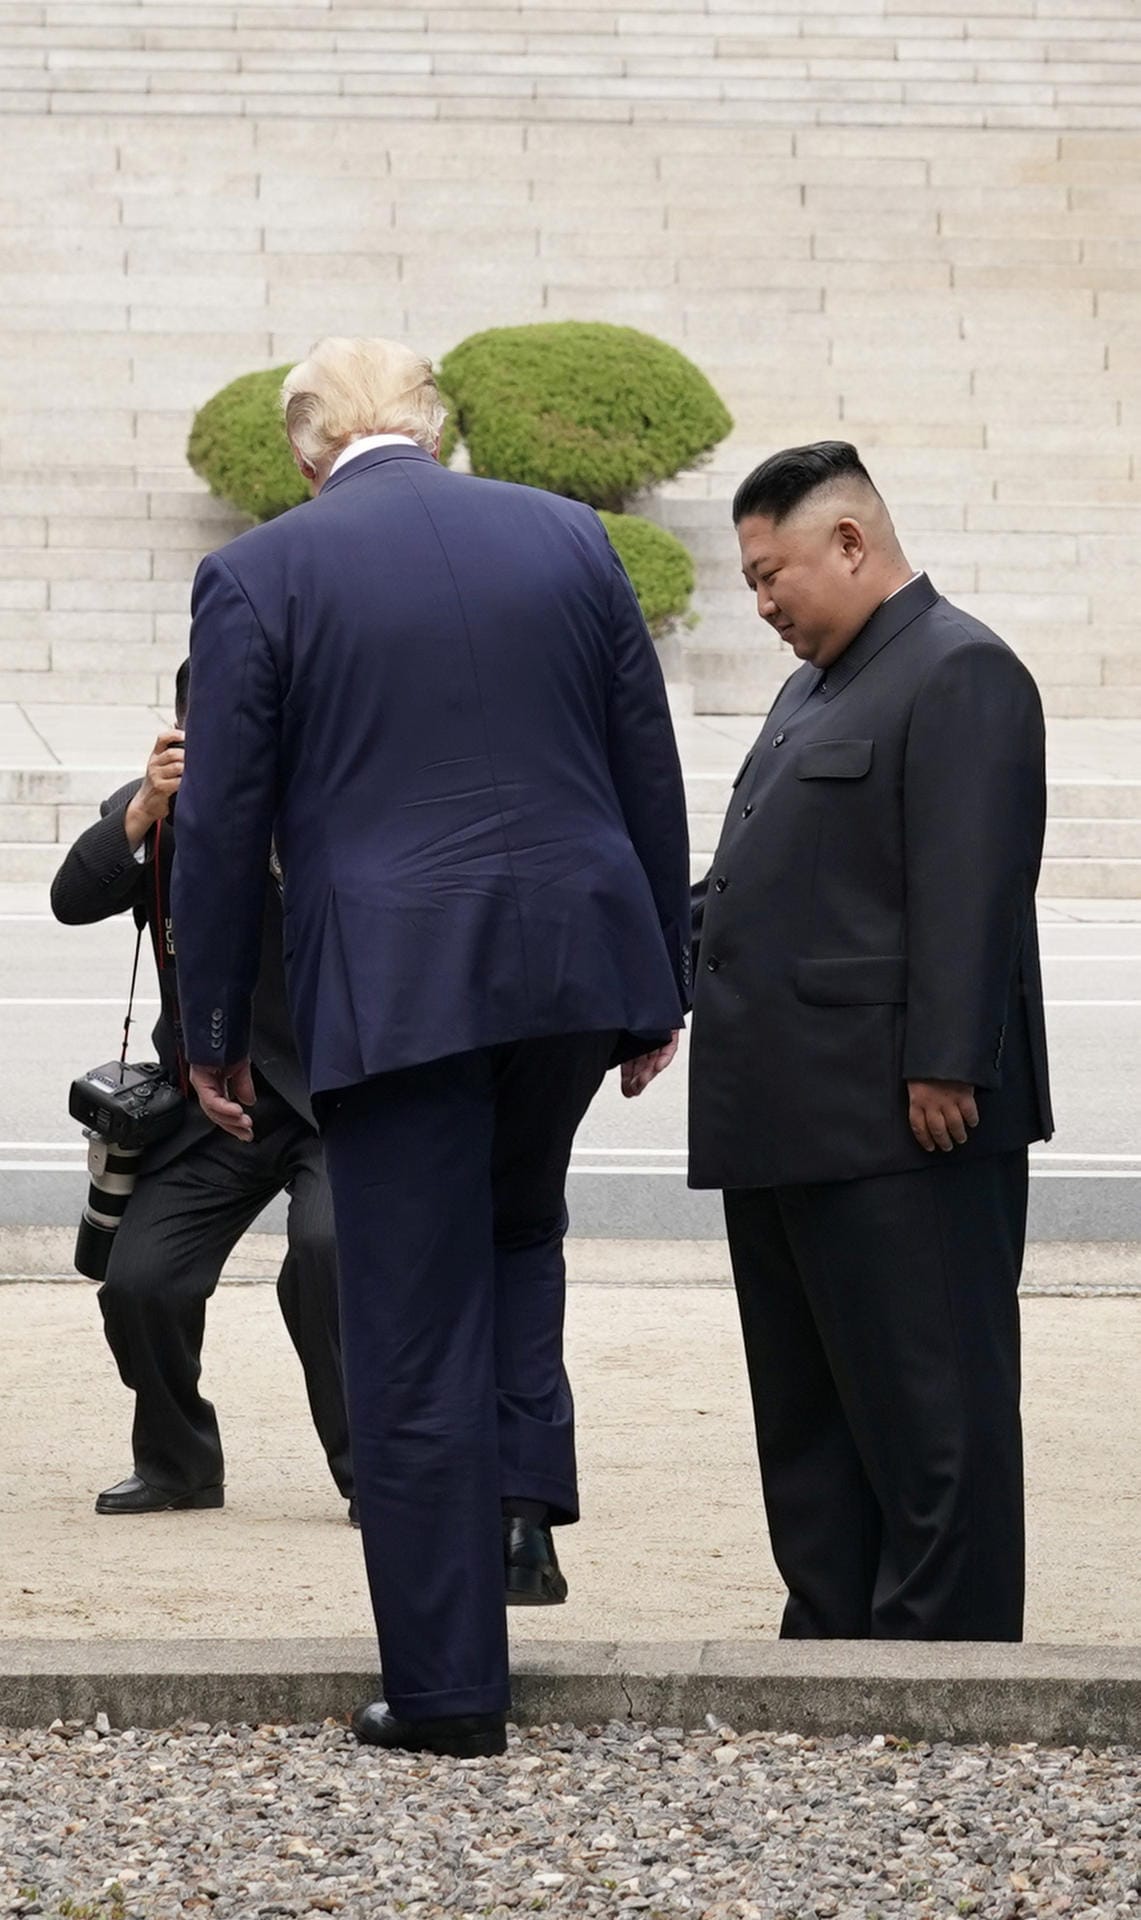 Trump willigt ein und macht einen historischen Schritt: Noch nie hat ein amtierender US-Präsident nordkoreansichen Boden betreten.